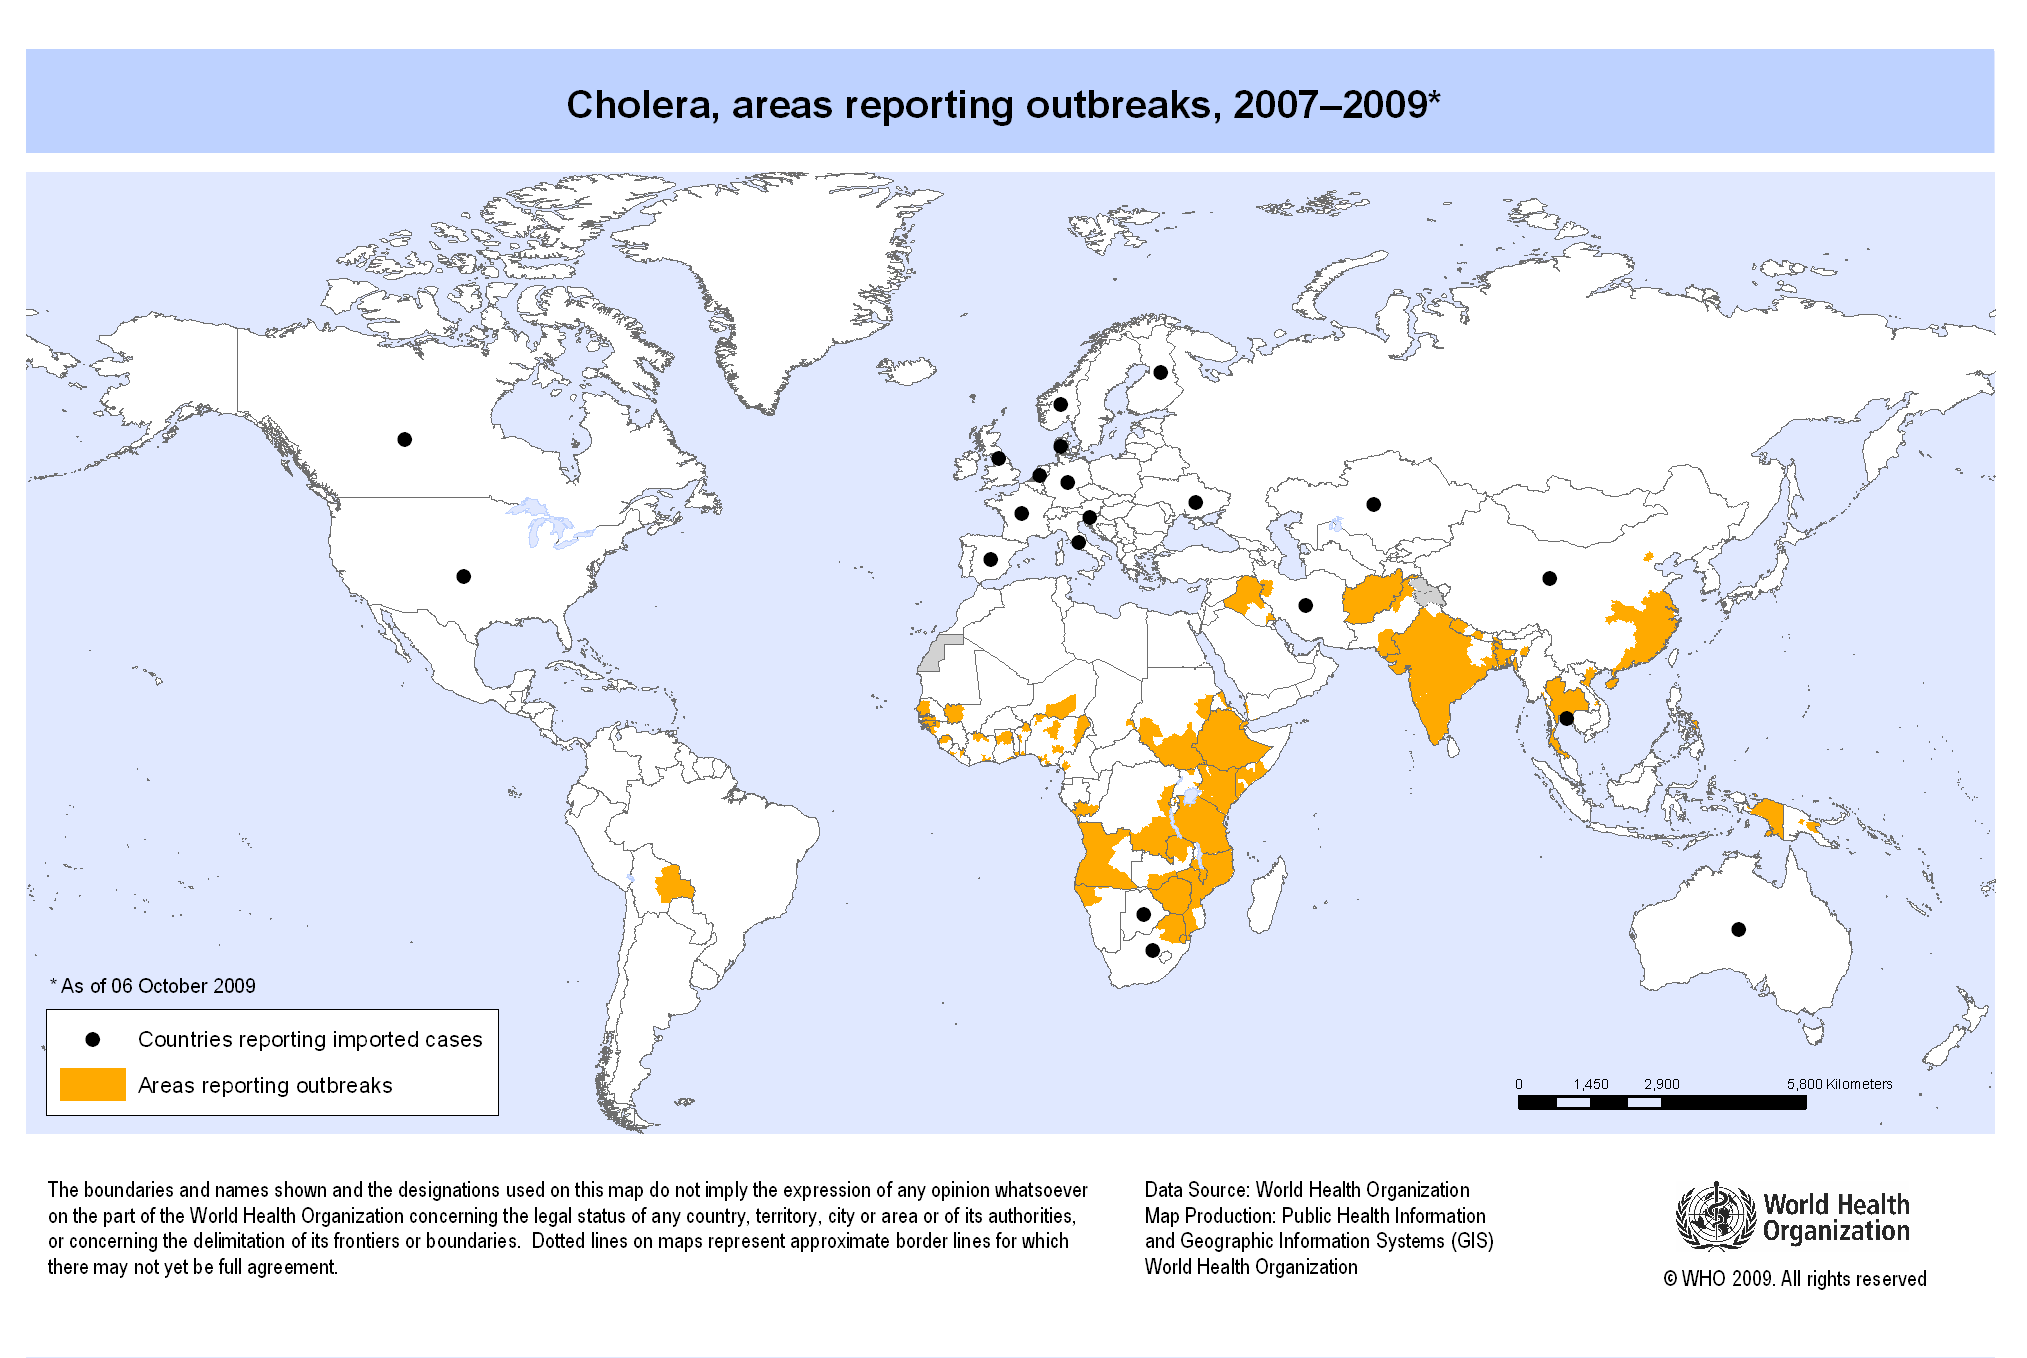 CholeraMap